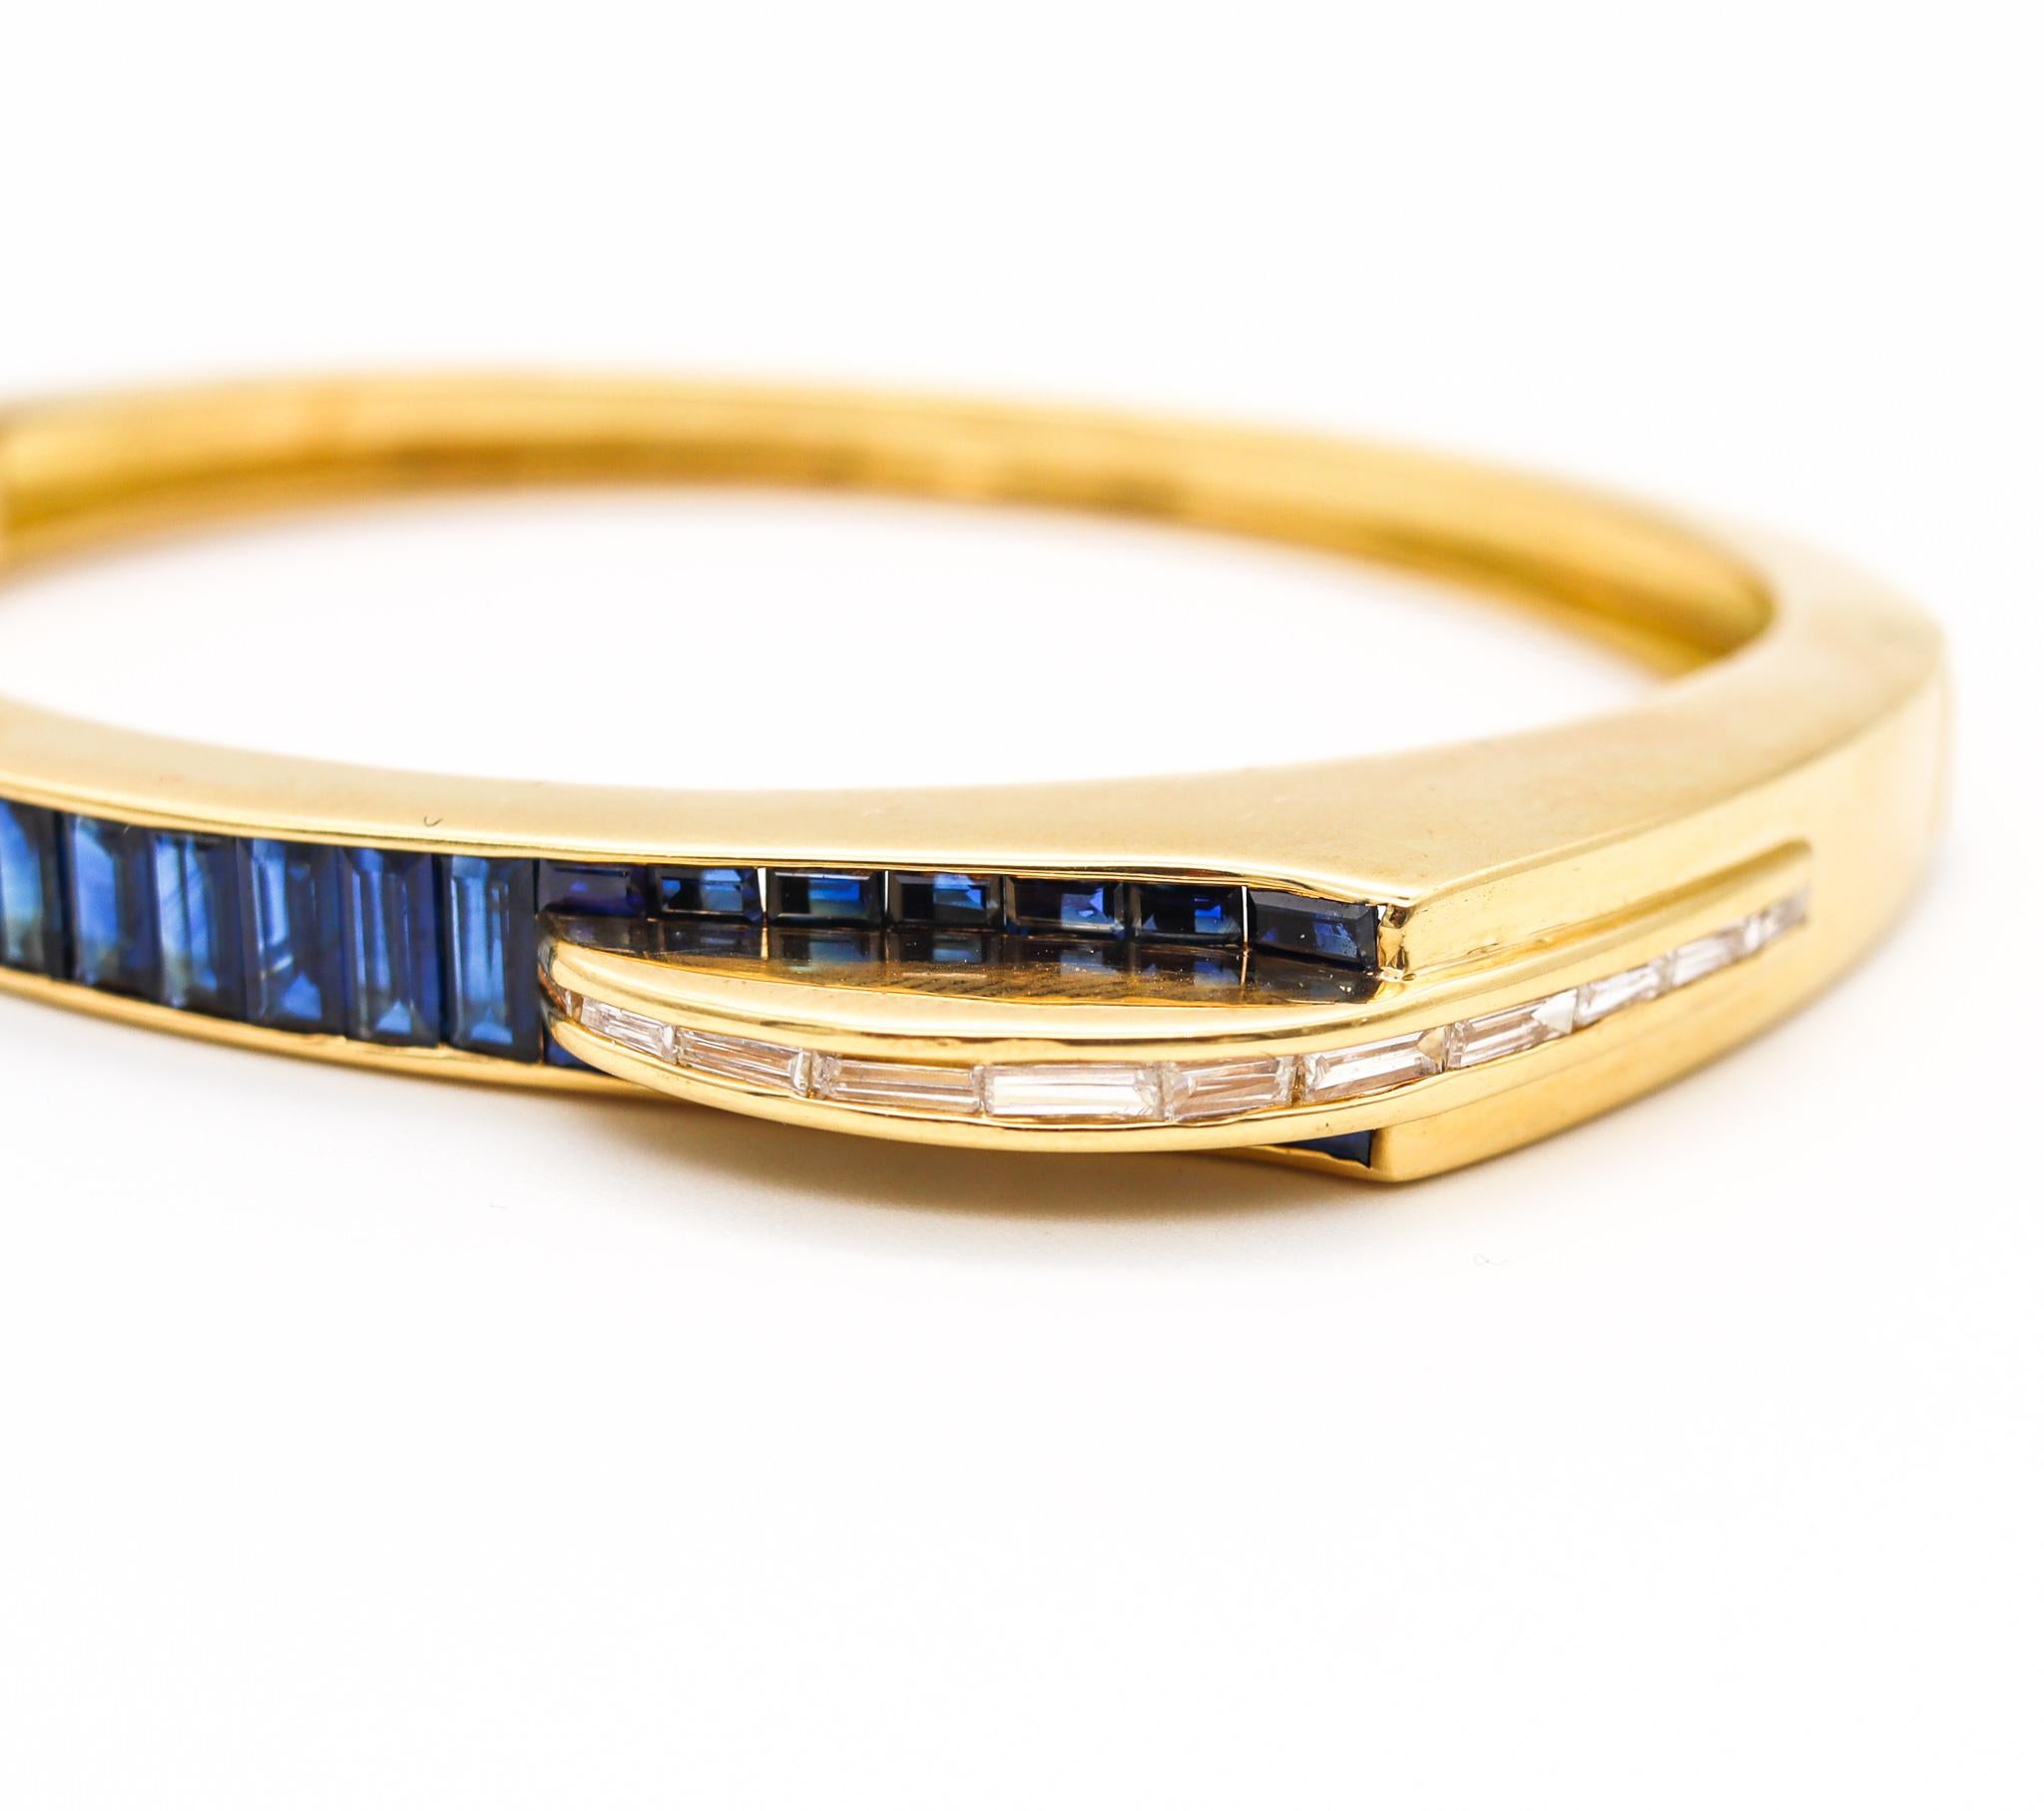 Gubelin Swiss 1970 Geometric Modernist Bracelet in 18Kt Gold 8.71 Cts Gemstones For Sale 4